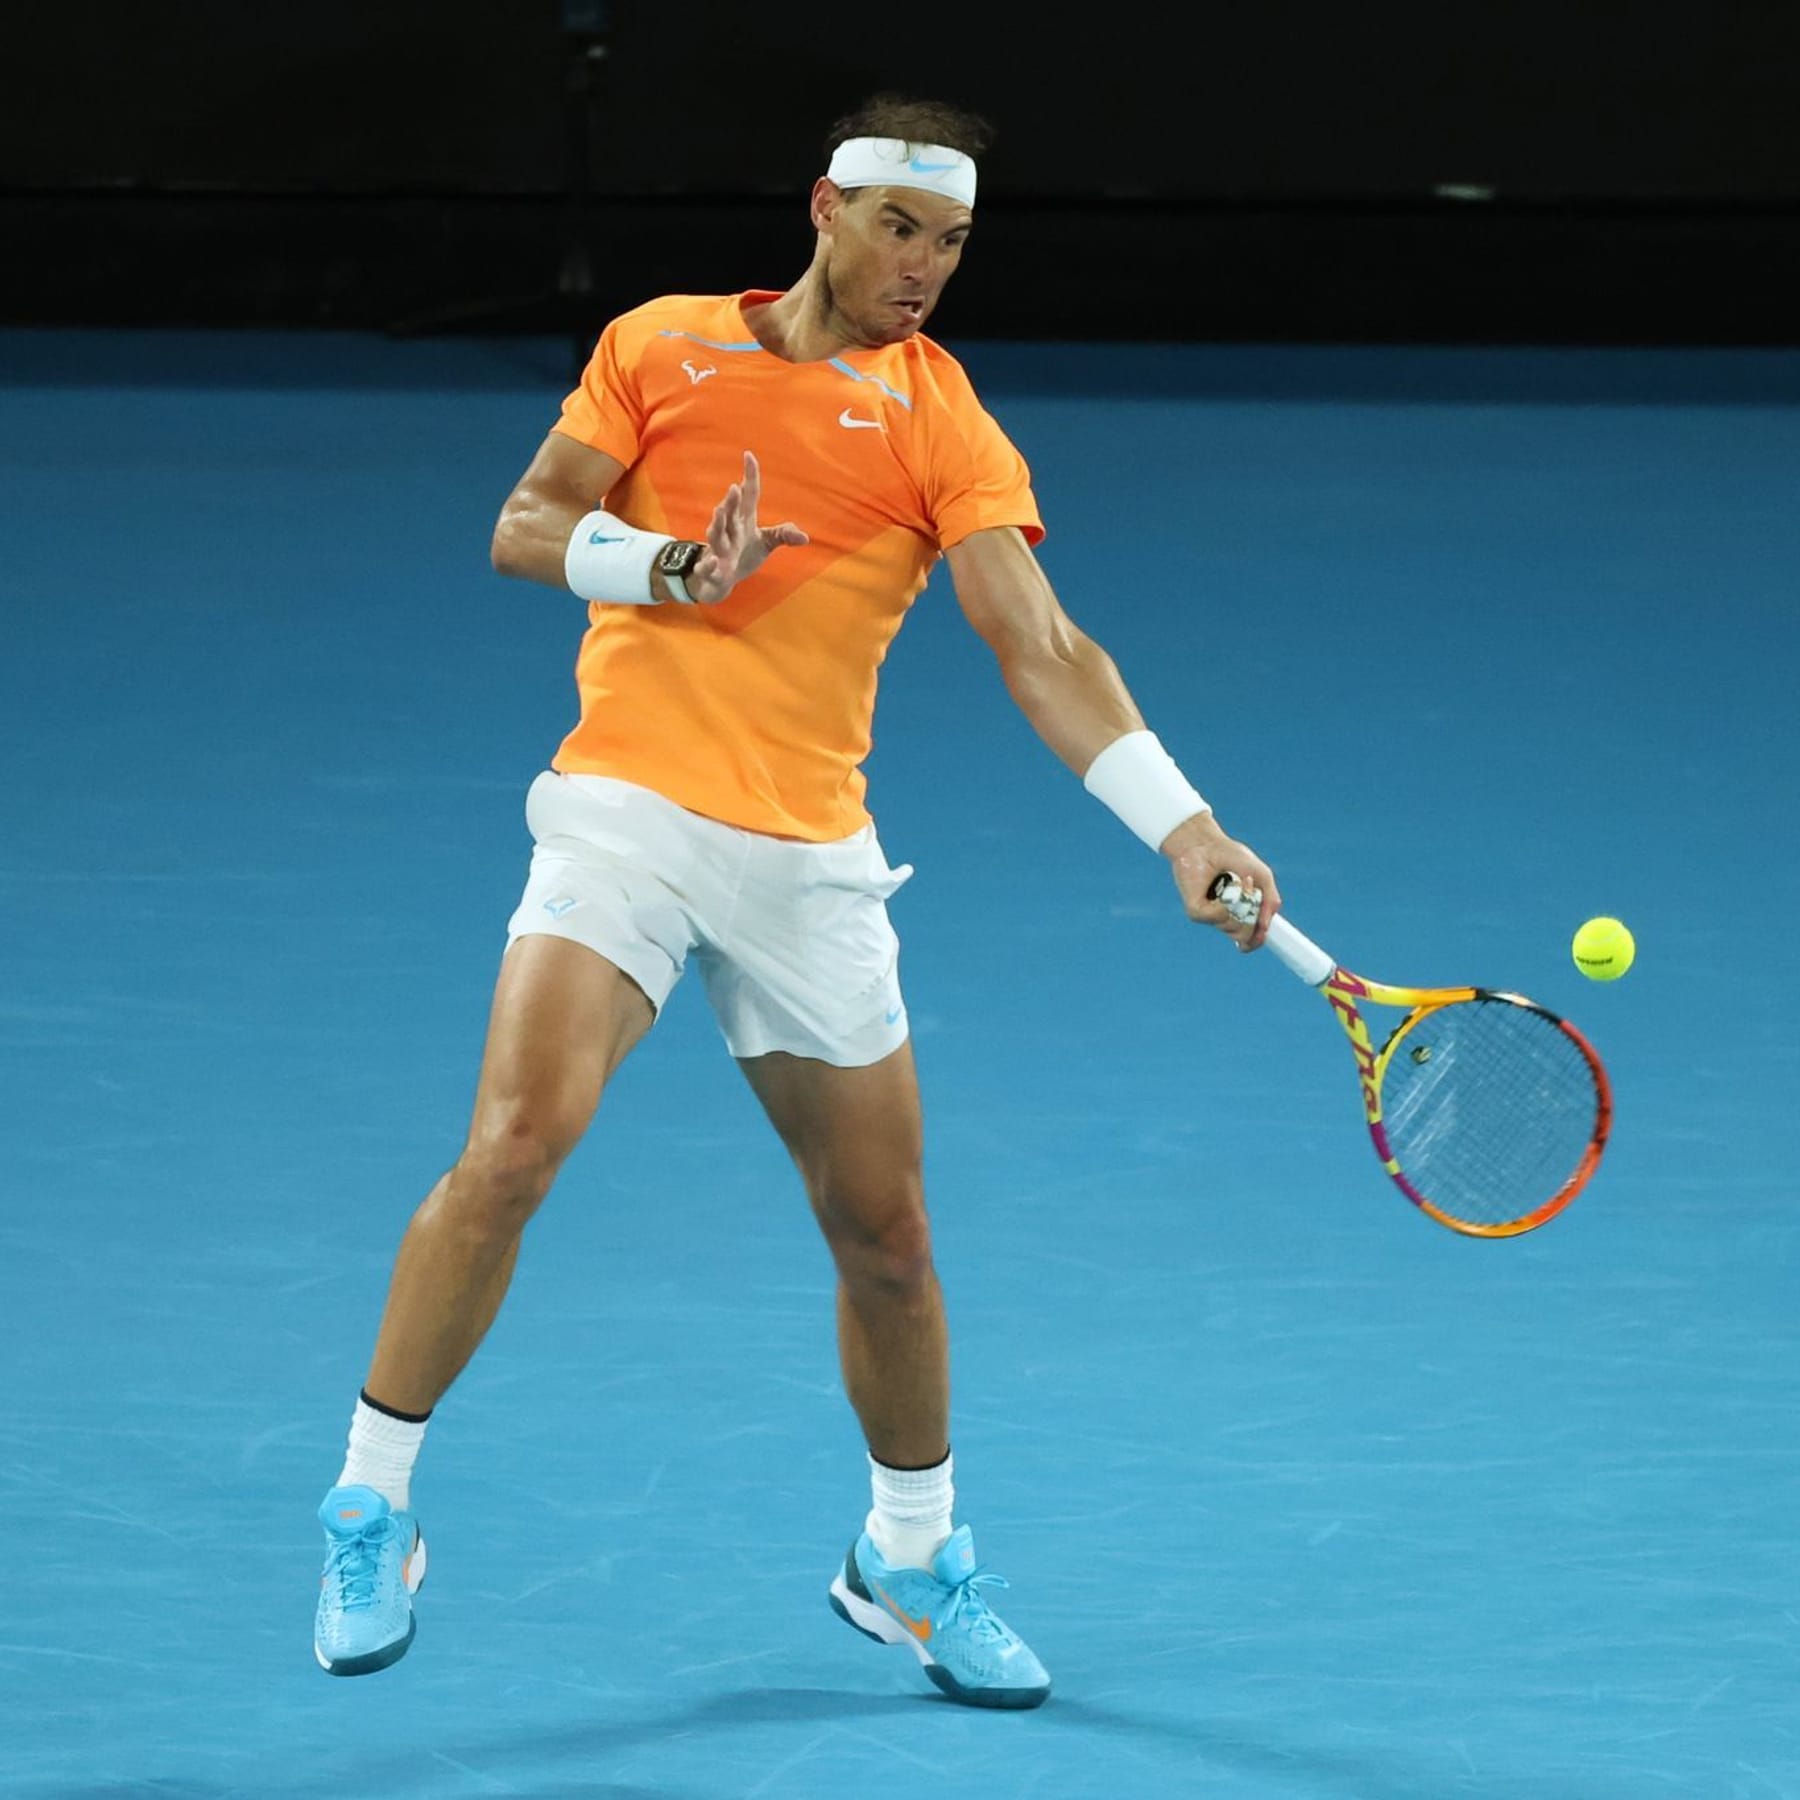 Tennis Djokovic freut sich auf Nadal-Rückkehr